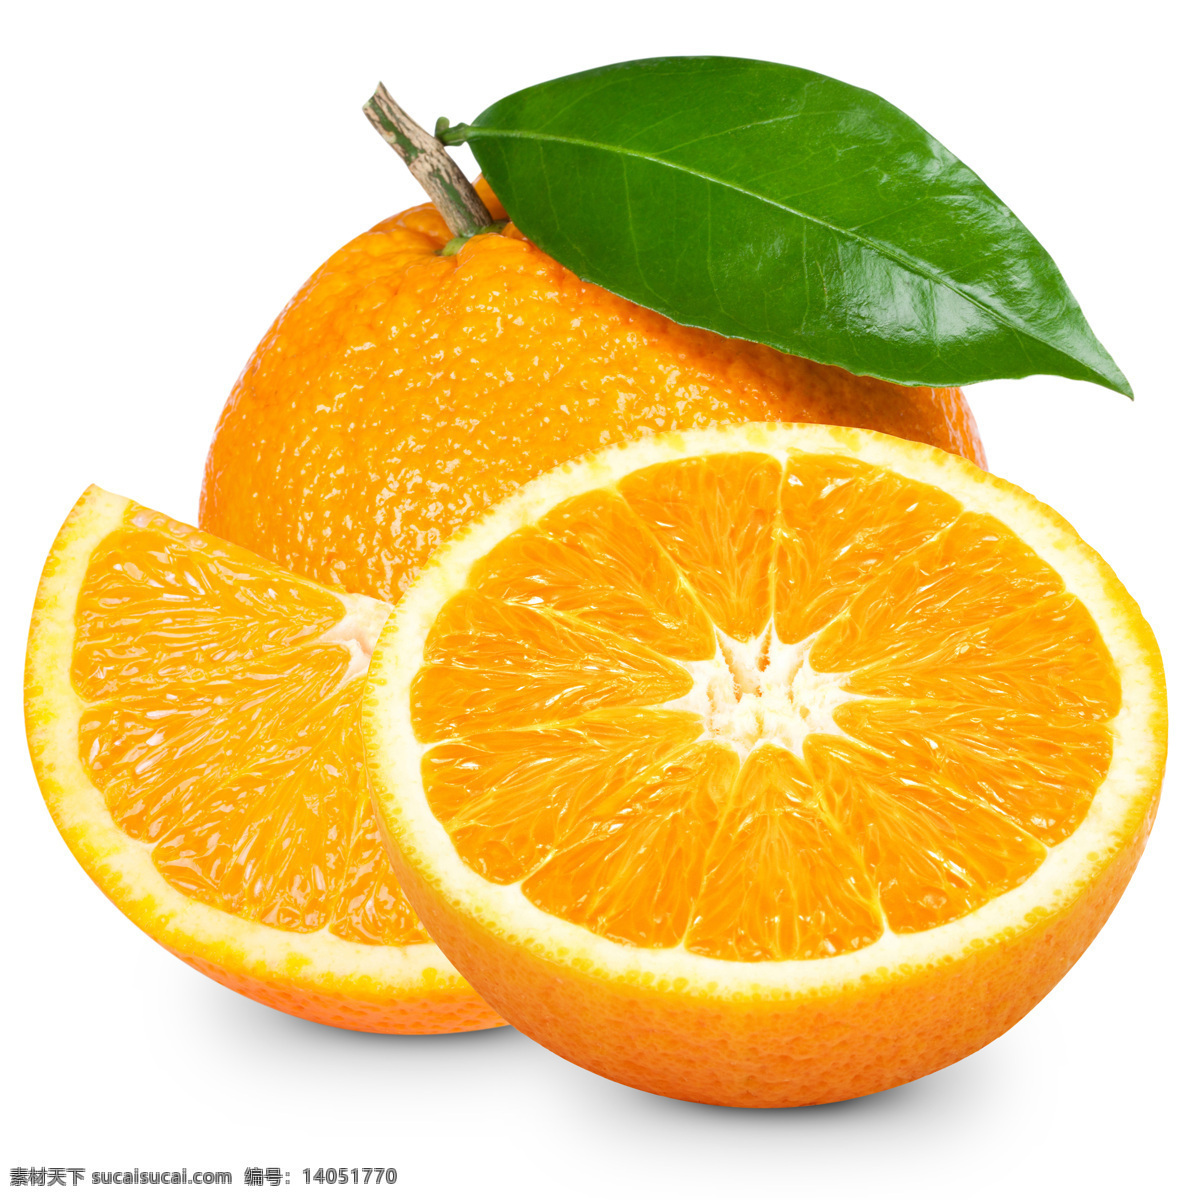 鲜橙多 橘子 切开的橘子 橙子 脐橙 果粒橙 水果 其他素材 生物世界